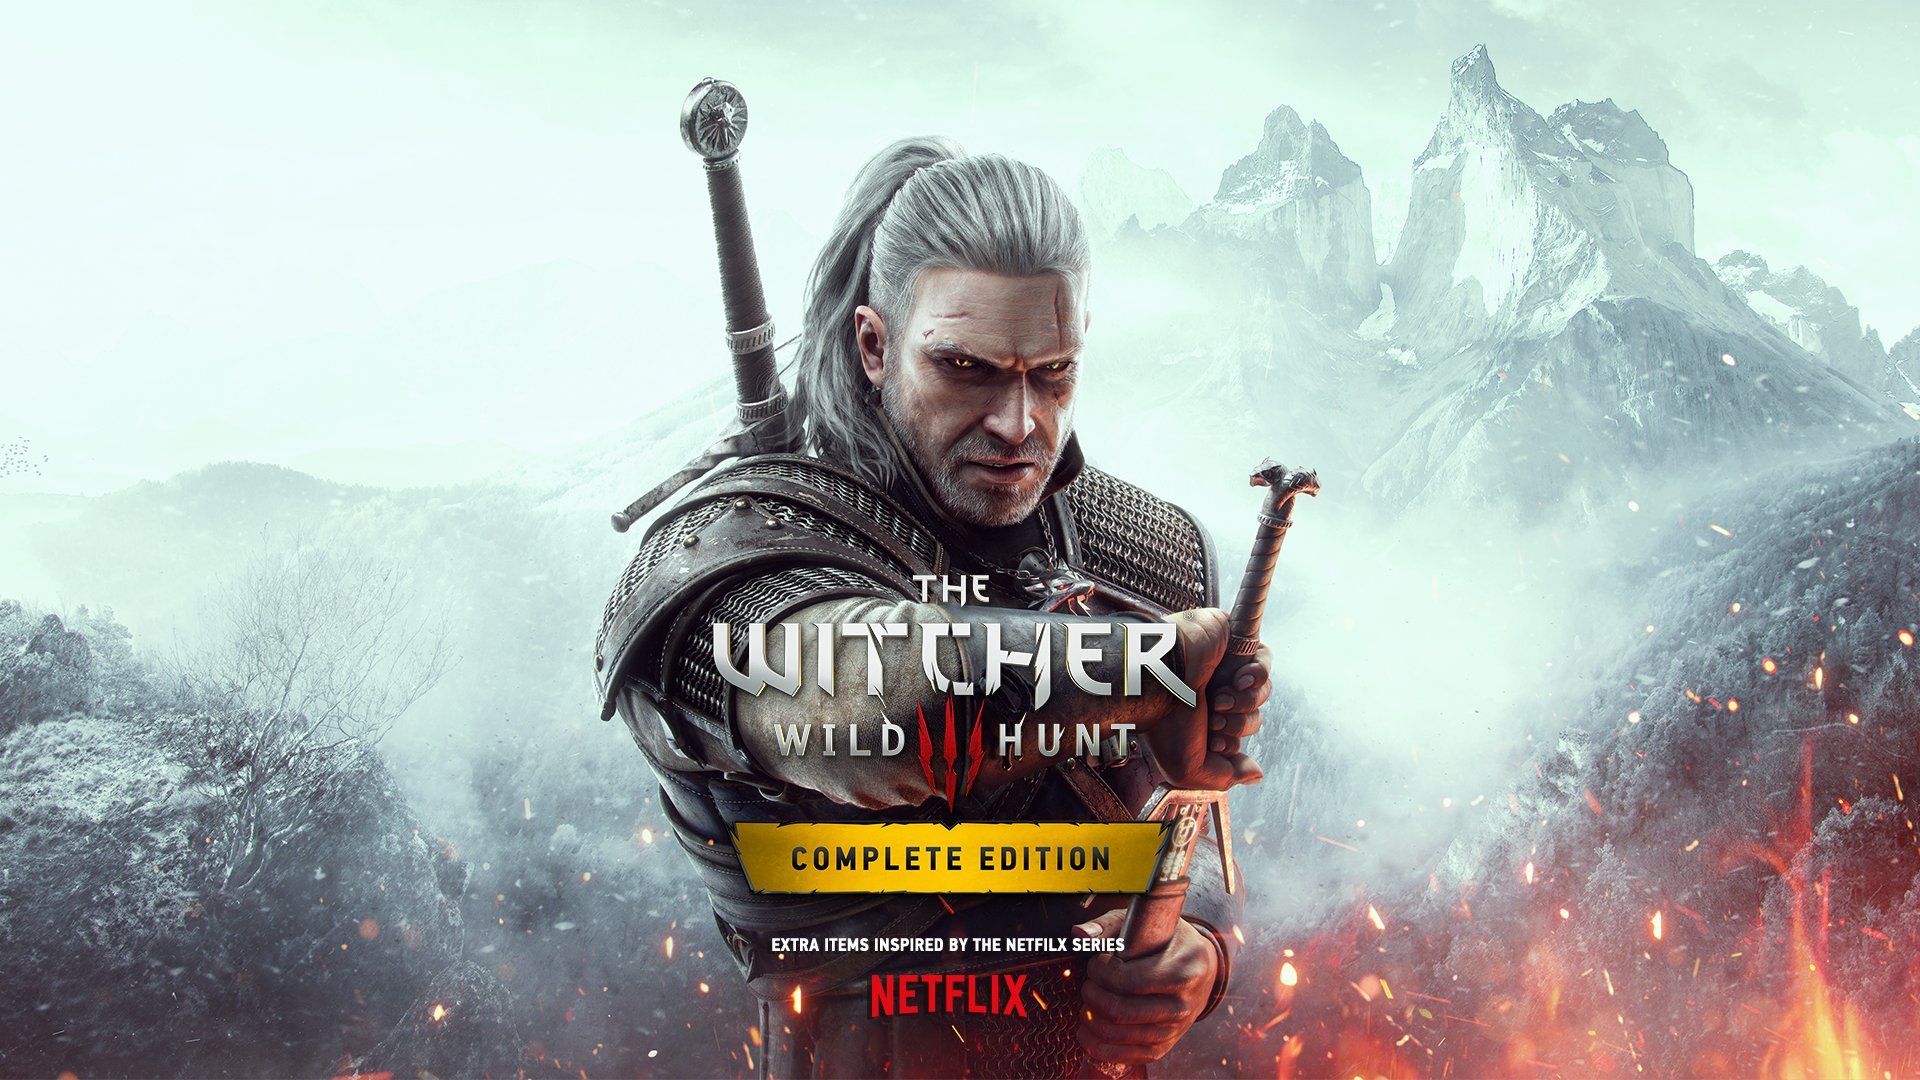 Улучшенная версия The Witcher 3 получит дополнительный контент по мотивам сериала от Netflix